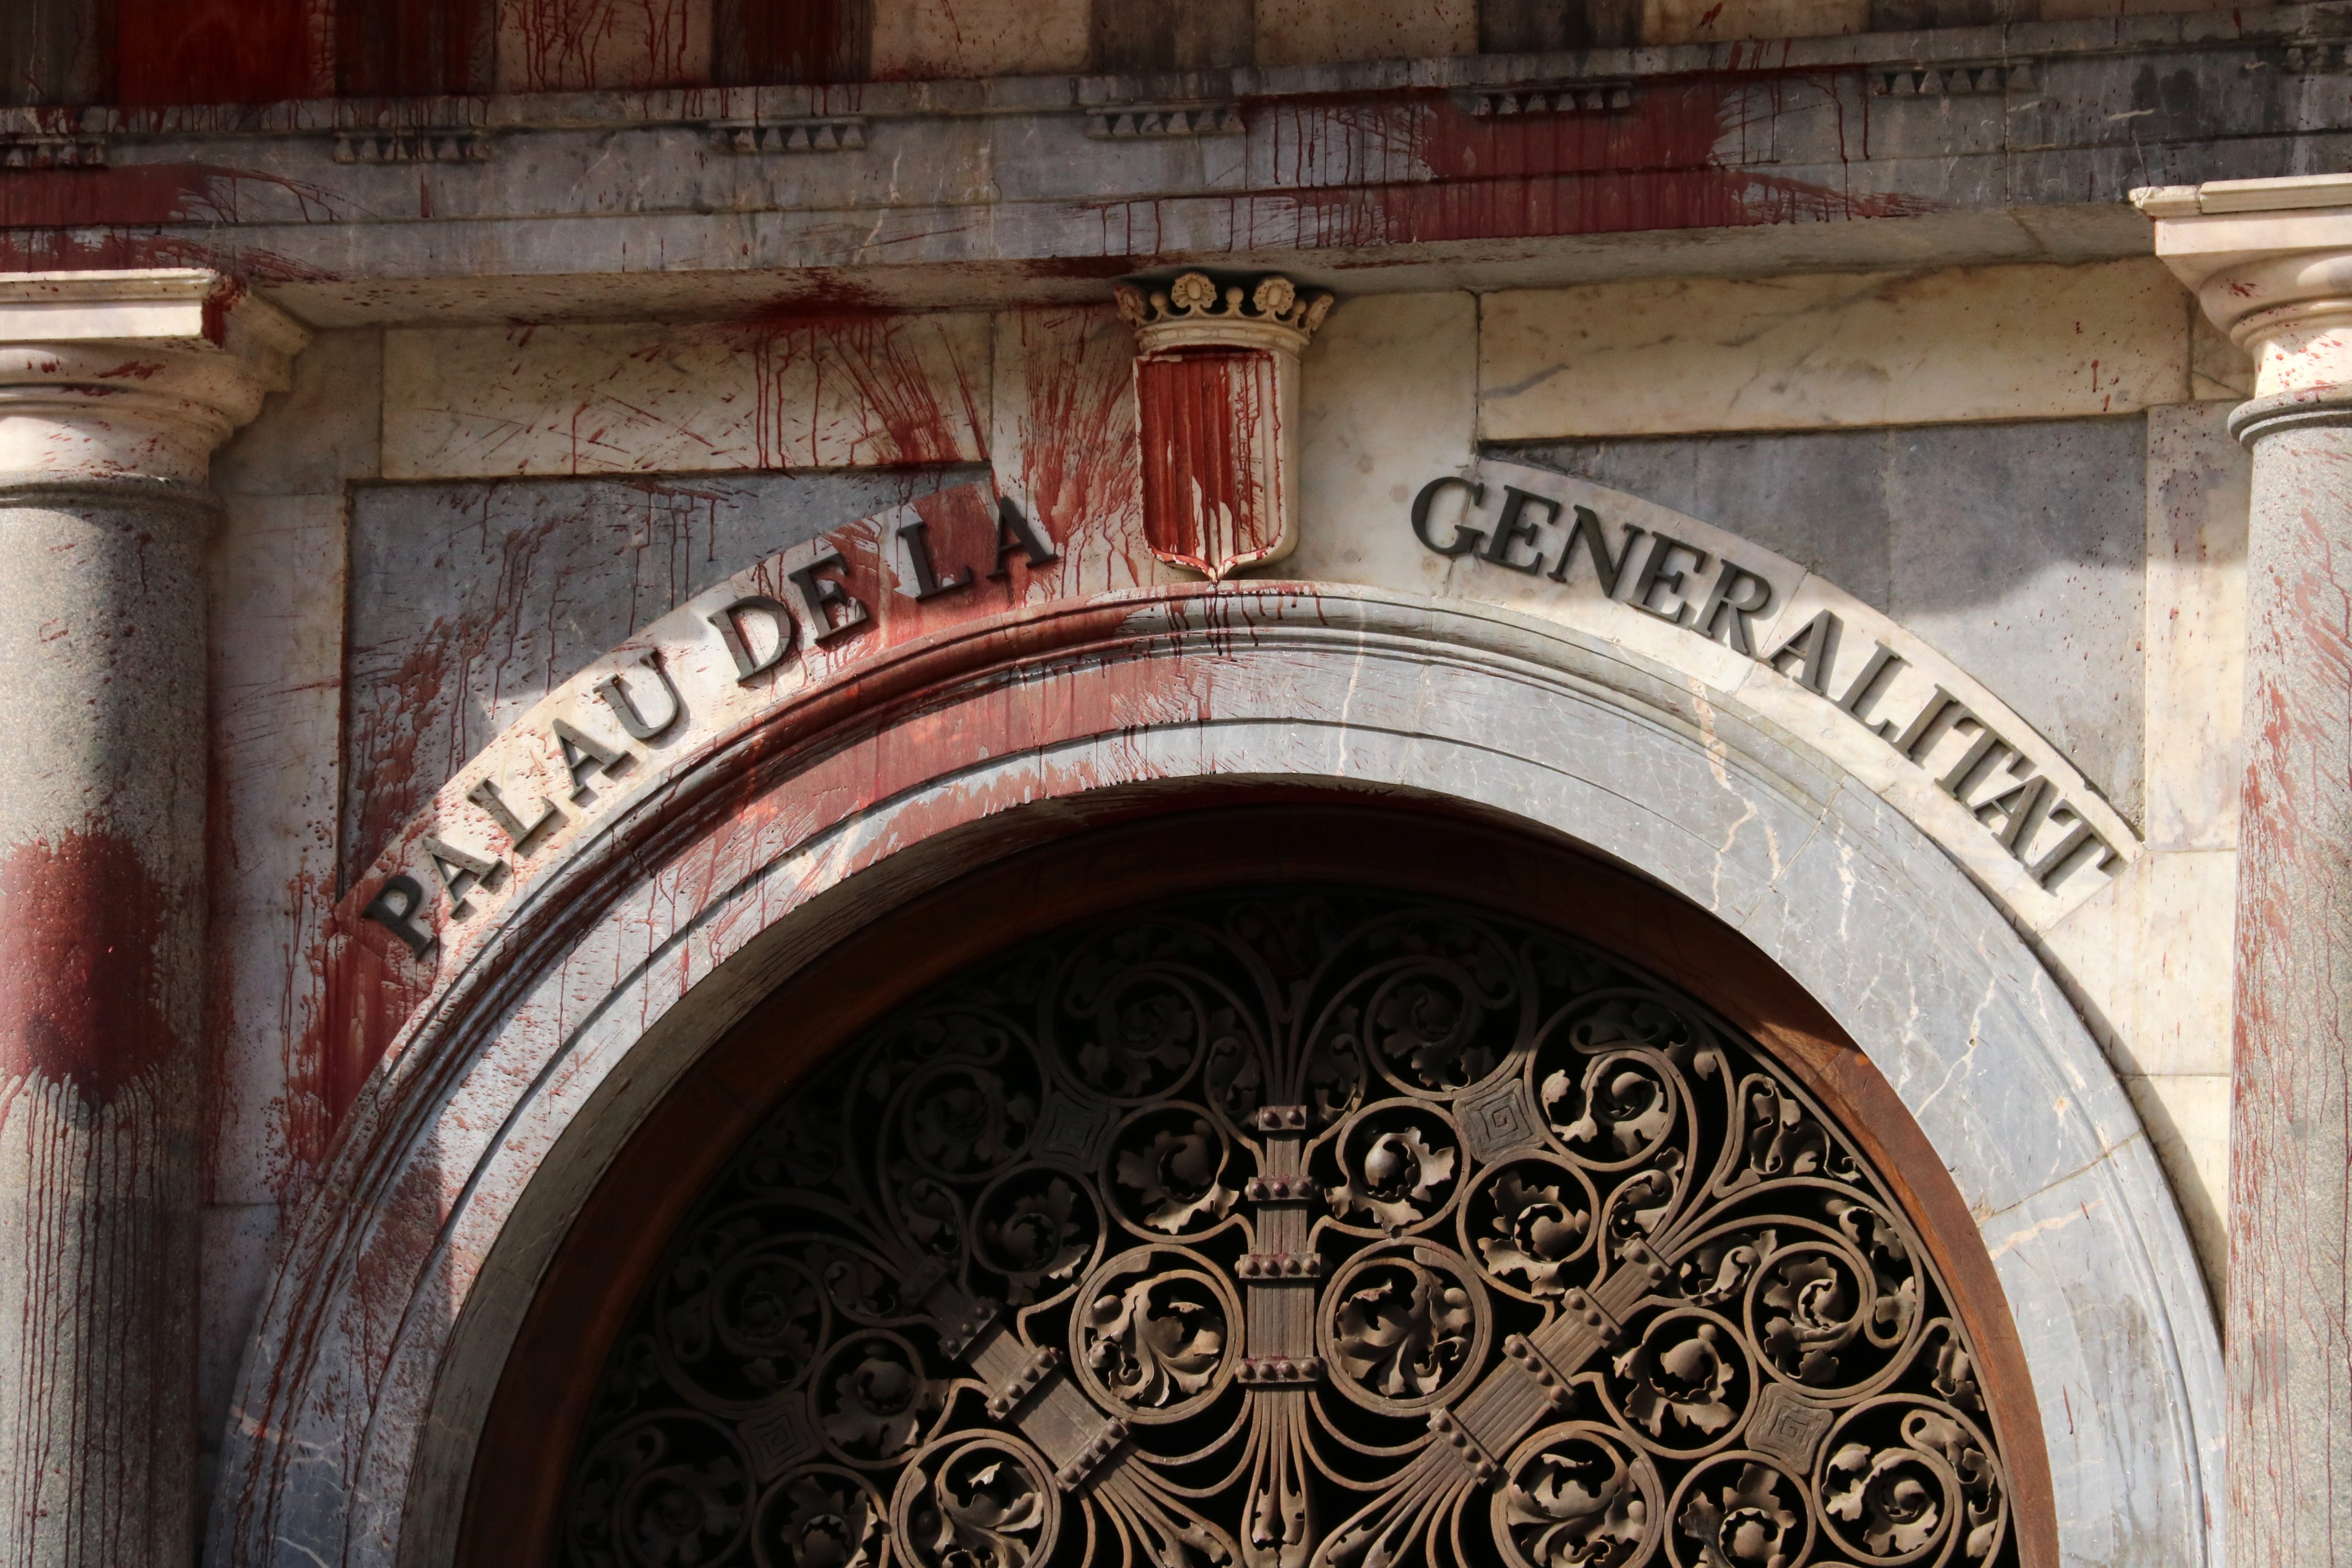 Creus que hi hauria d'haver més vigilància al Palau de la Generalitat?